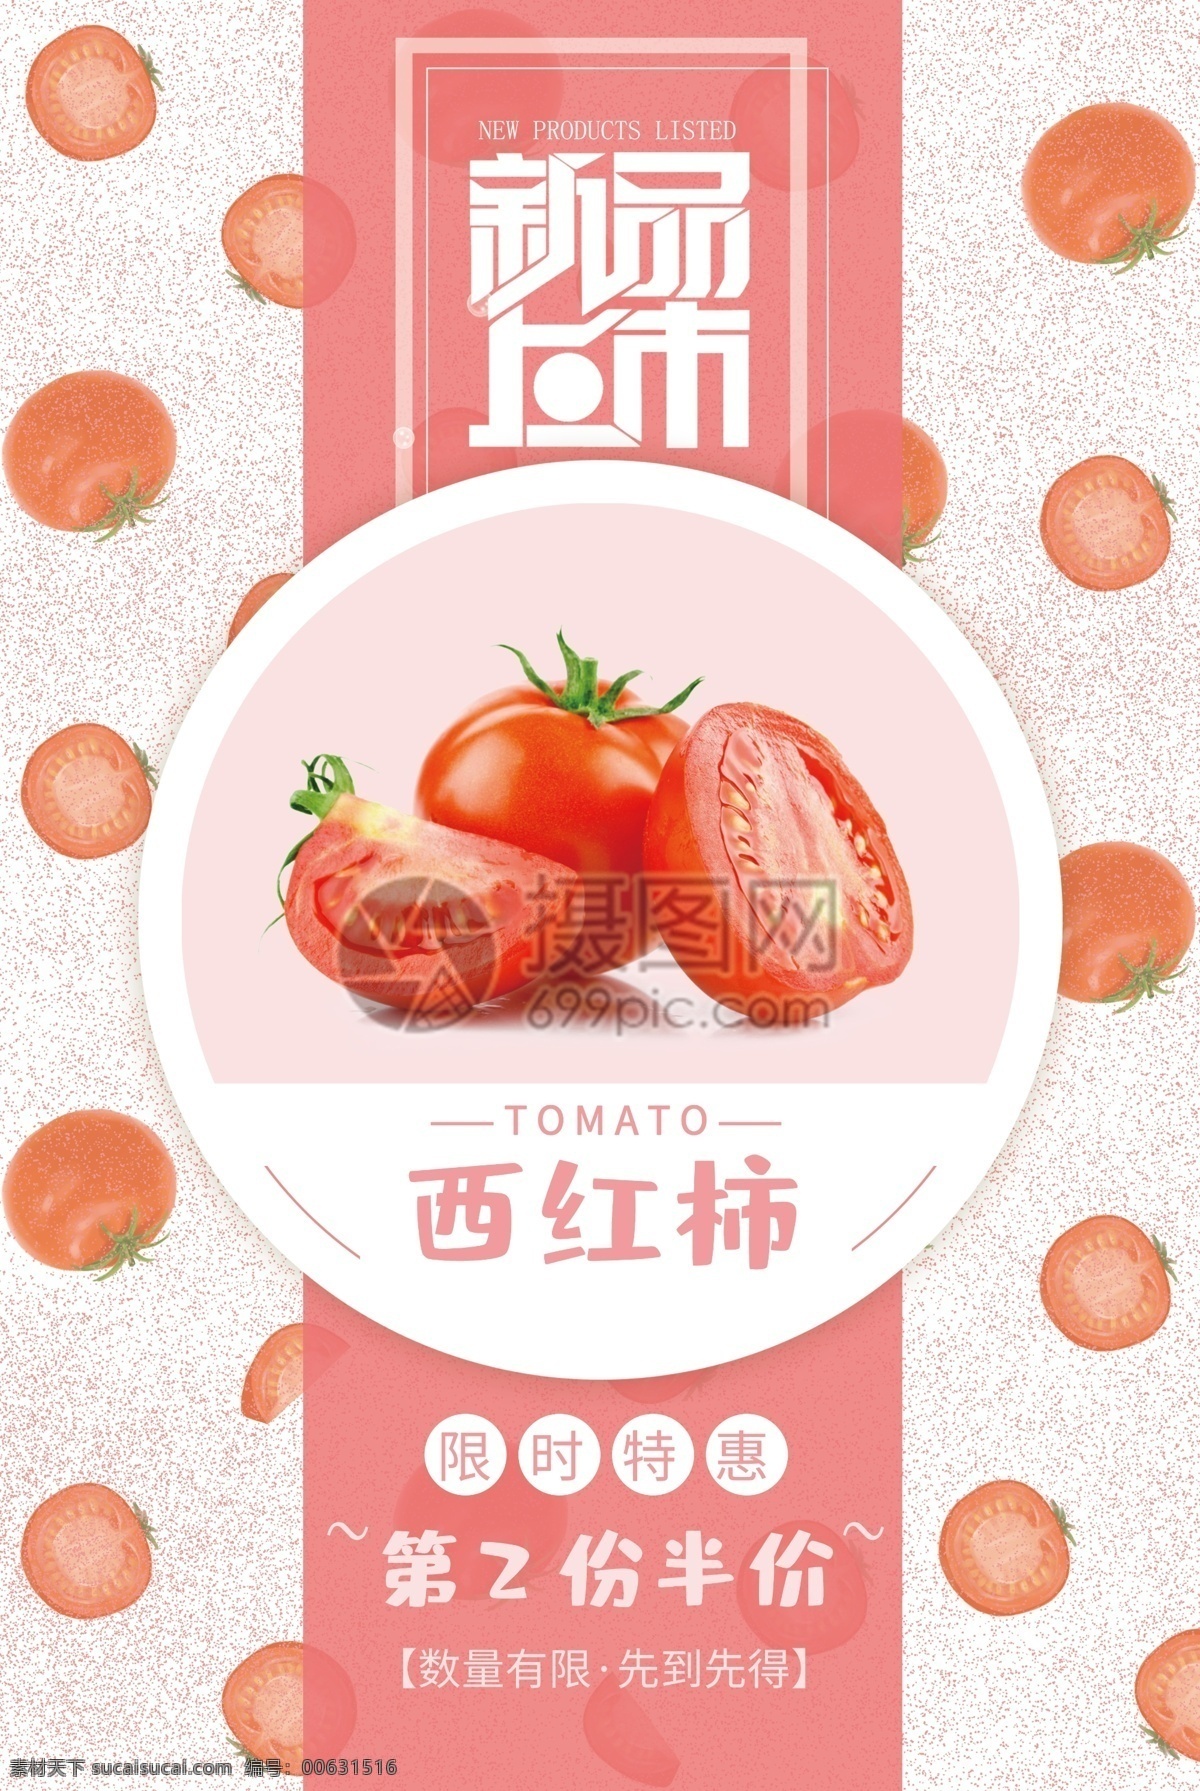 粉红色 西红柿 促销 海报 果蔬 水果 蔬菜 蔬果 新鲜果蔬 番茄促销 新品上市 限时特惠 新鲜水果 新鲜西红柿